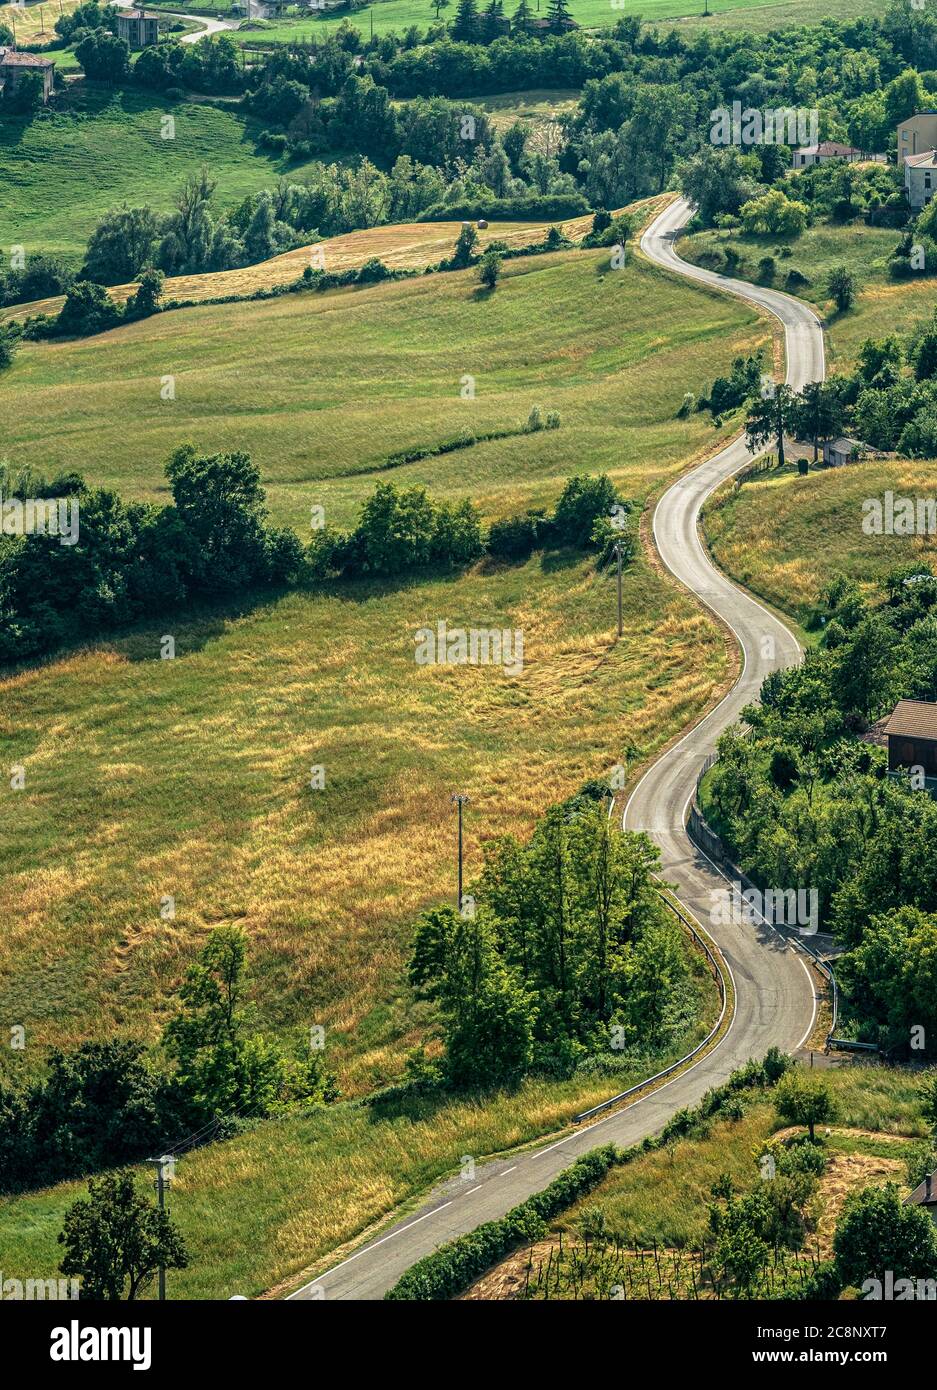 Strada collinare curvata senza traffico attraverso le colline dell'Appennino Settentrionale. Bardi, provincia di Parma, Emilia Romagna, Italia. Foto Stock